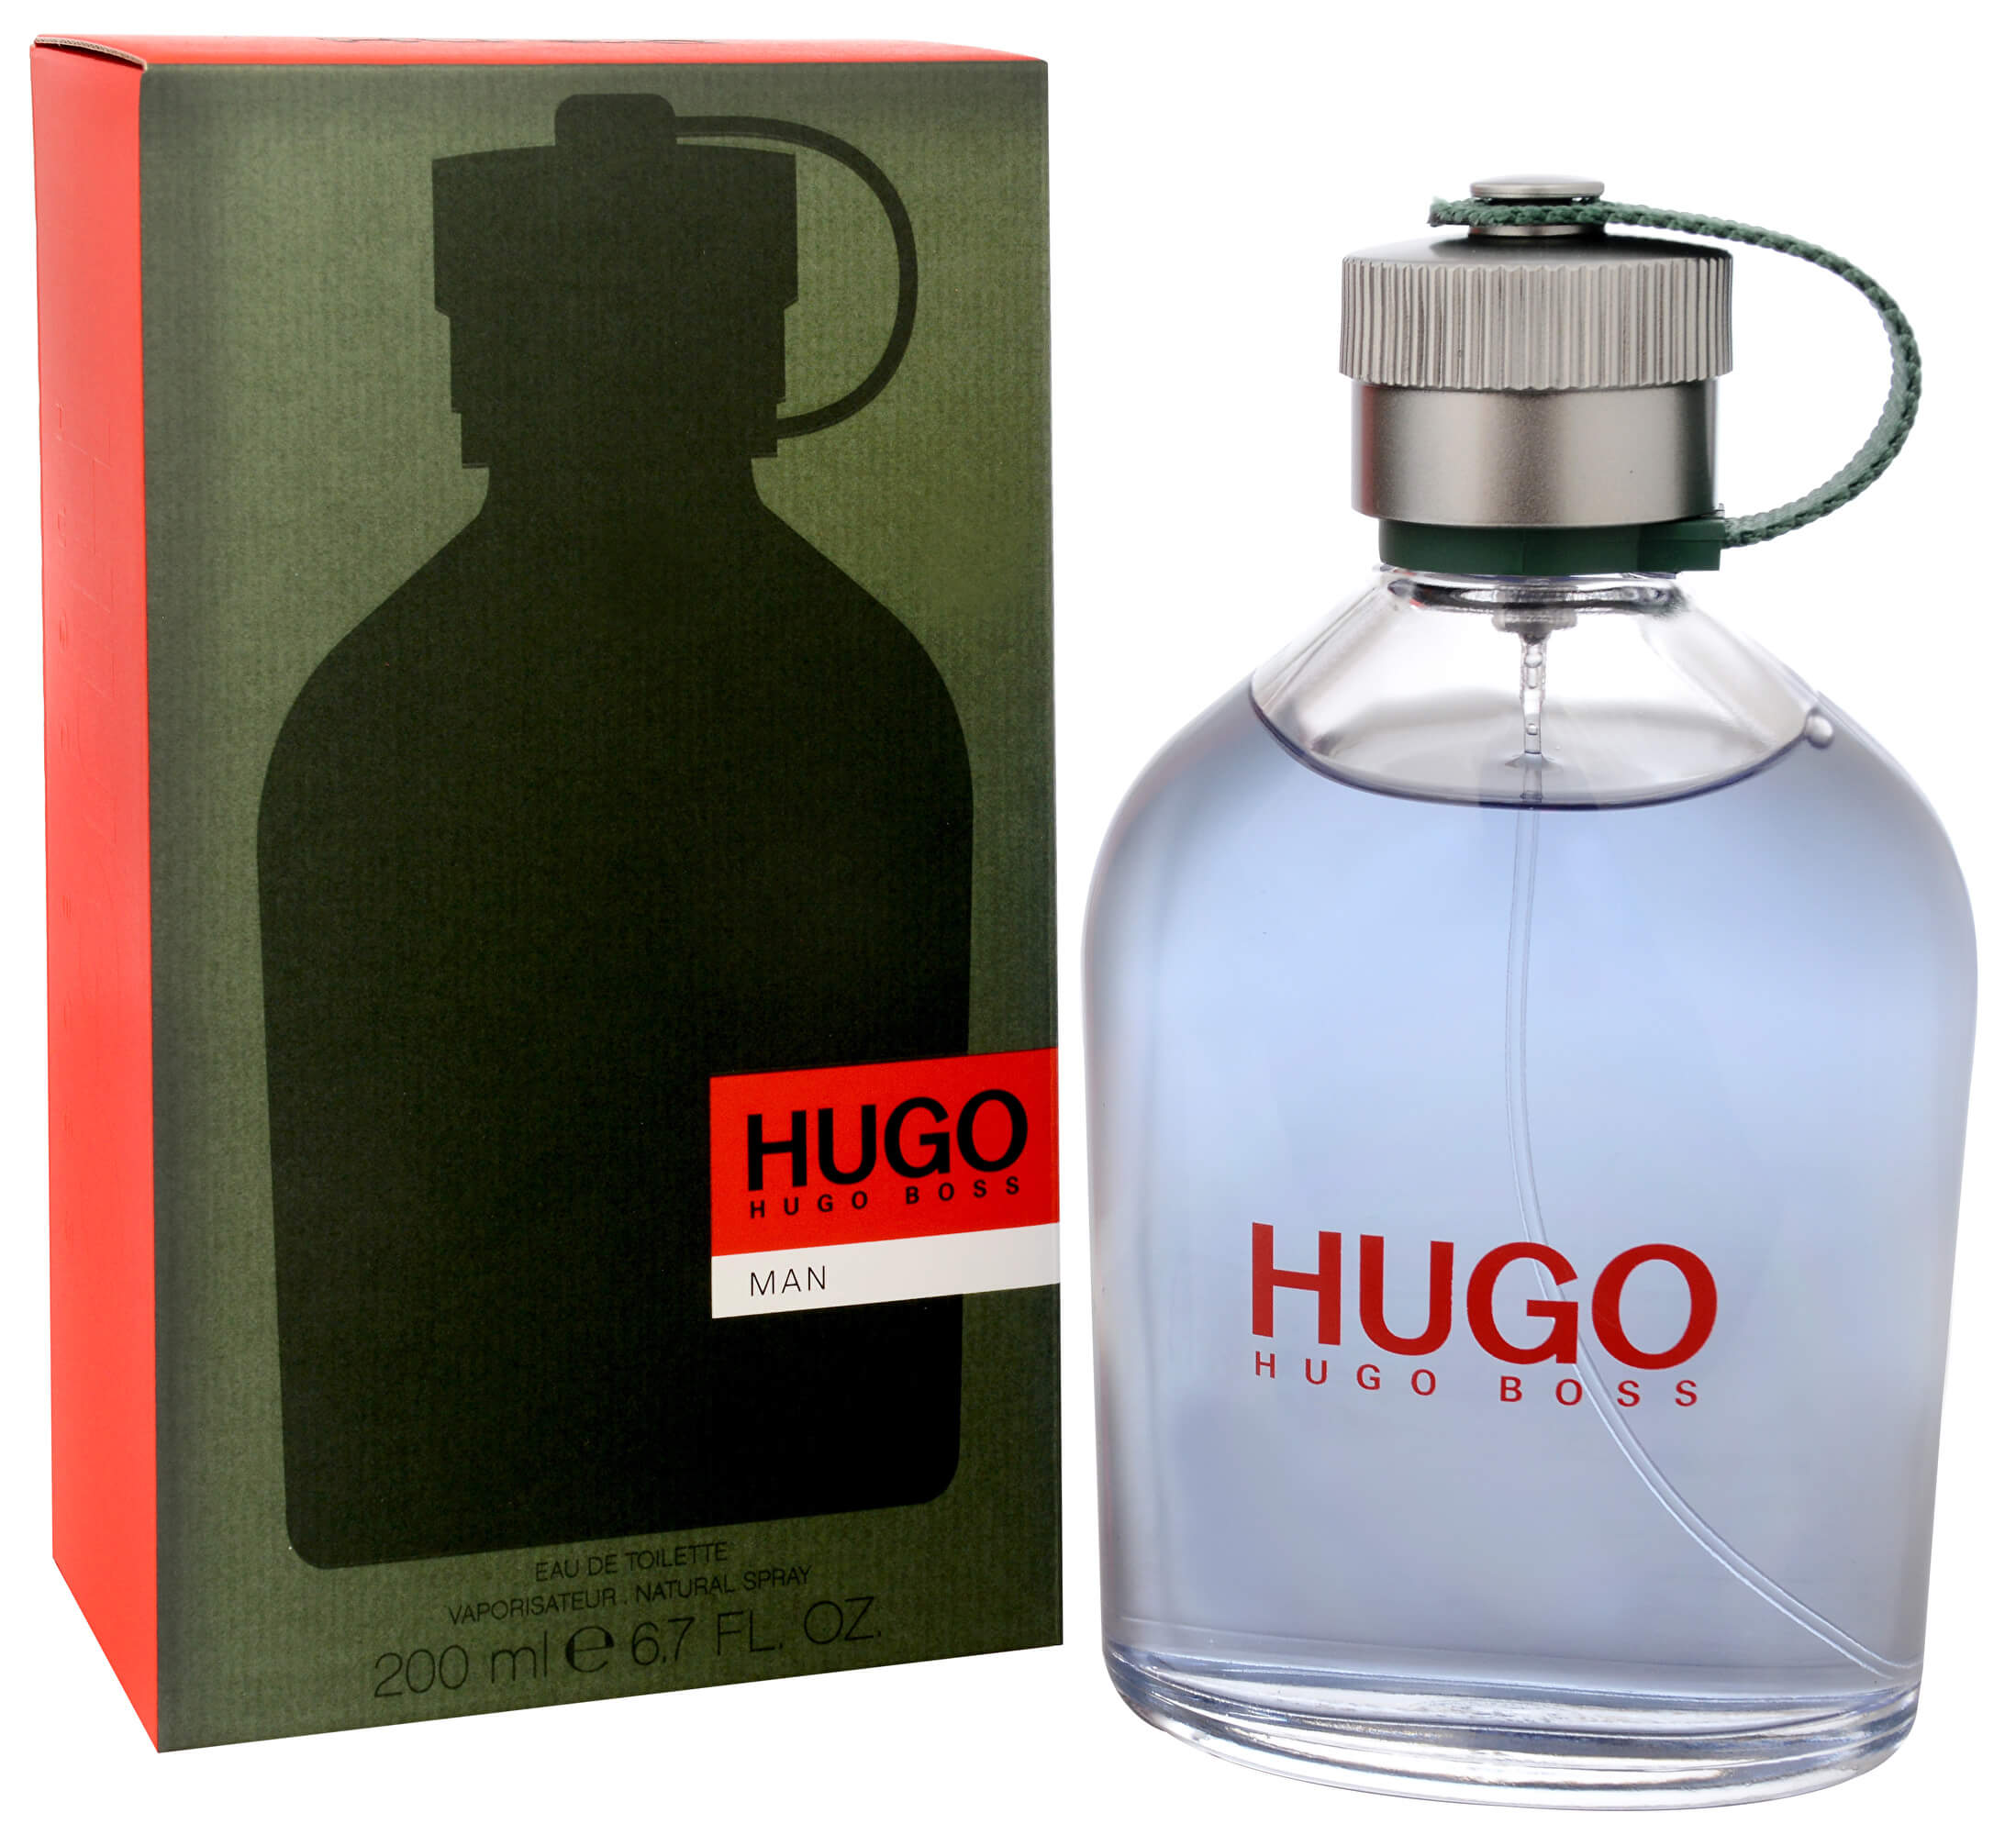 Hugo перевод на русский. Hugo Boss eu de Toilette. Hugo Boss 200 мл. Туалетная вода Hugo Boss Hugo Art Limited Edition. Парфюмерная вода Hugo Boss Hugo create Limited Edition.